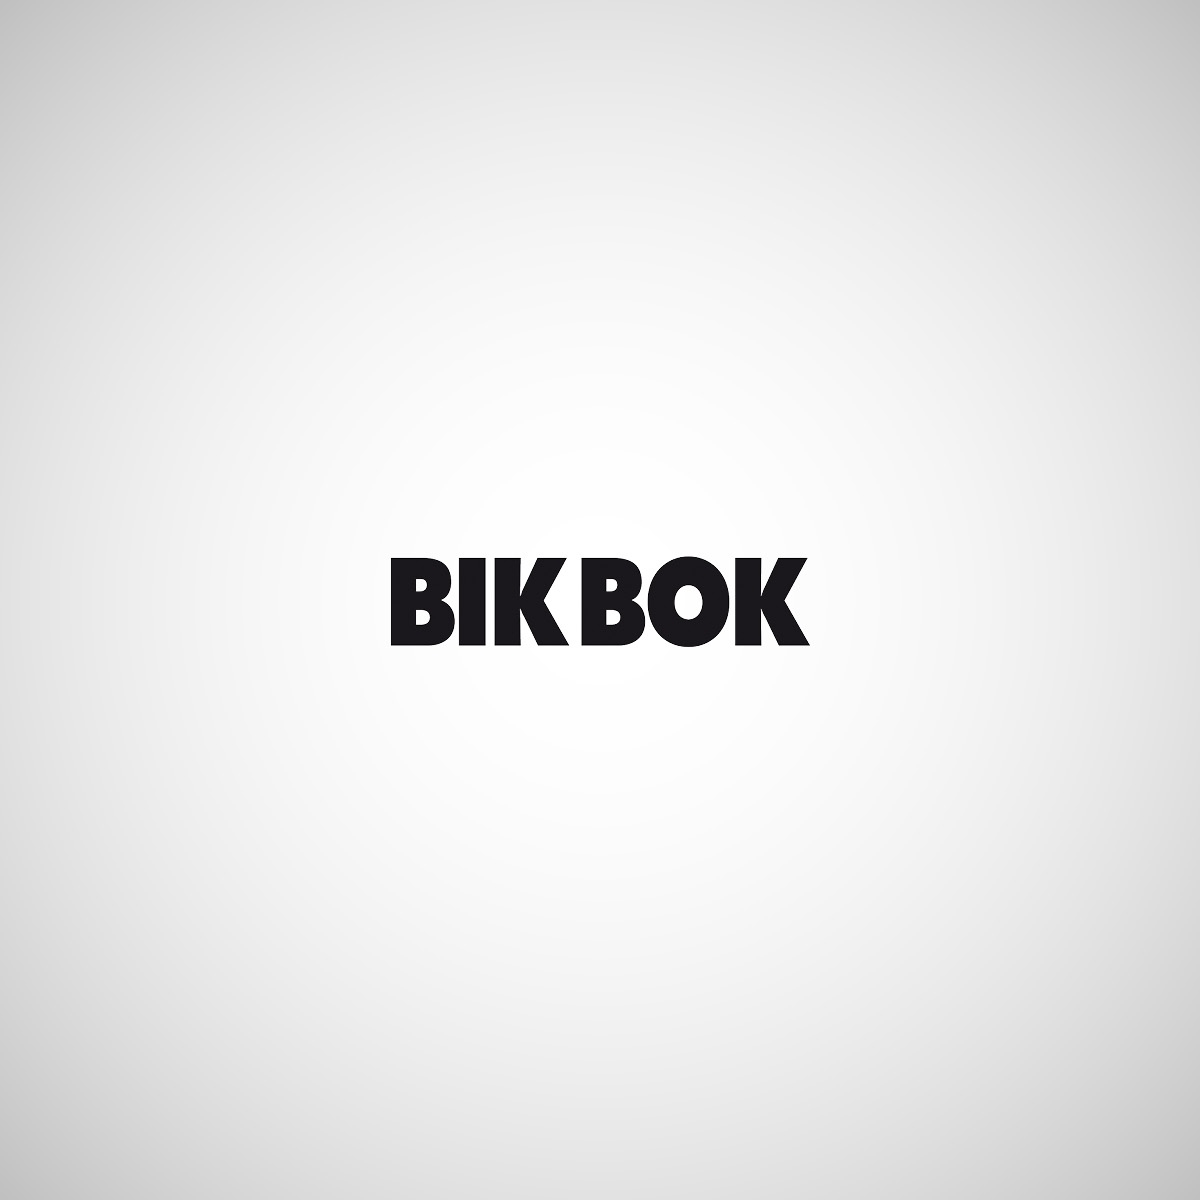 BikBok_1200x1200.jpg